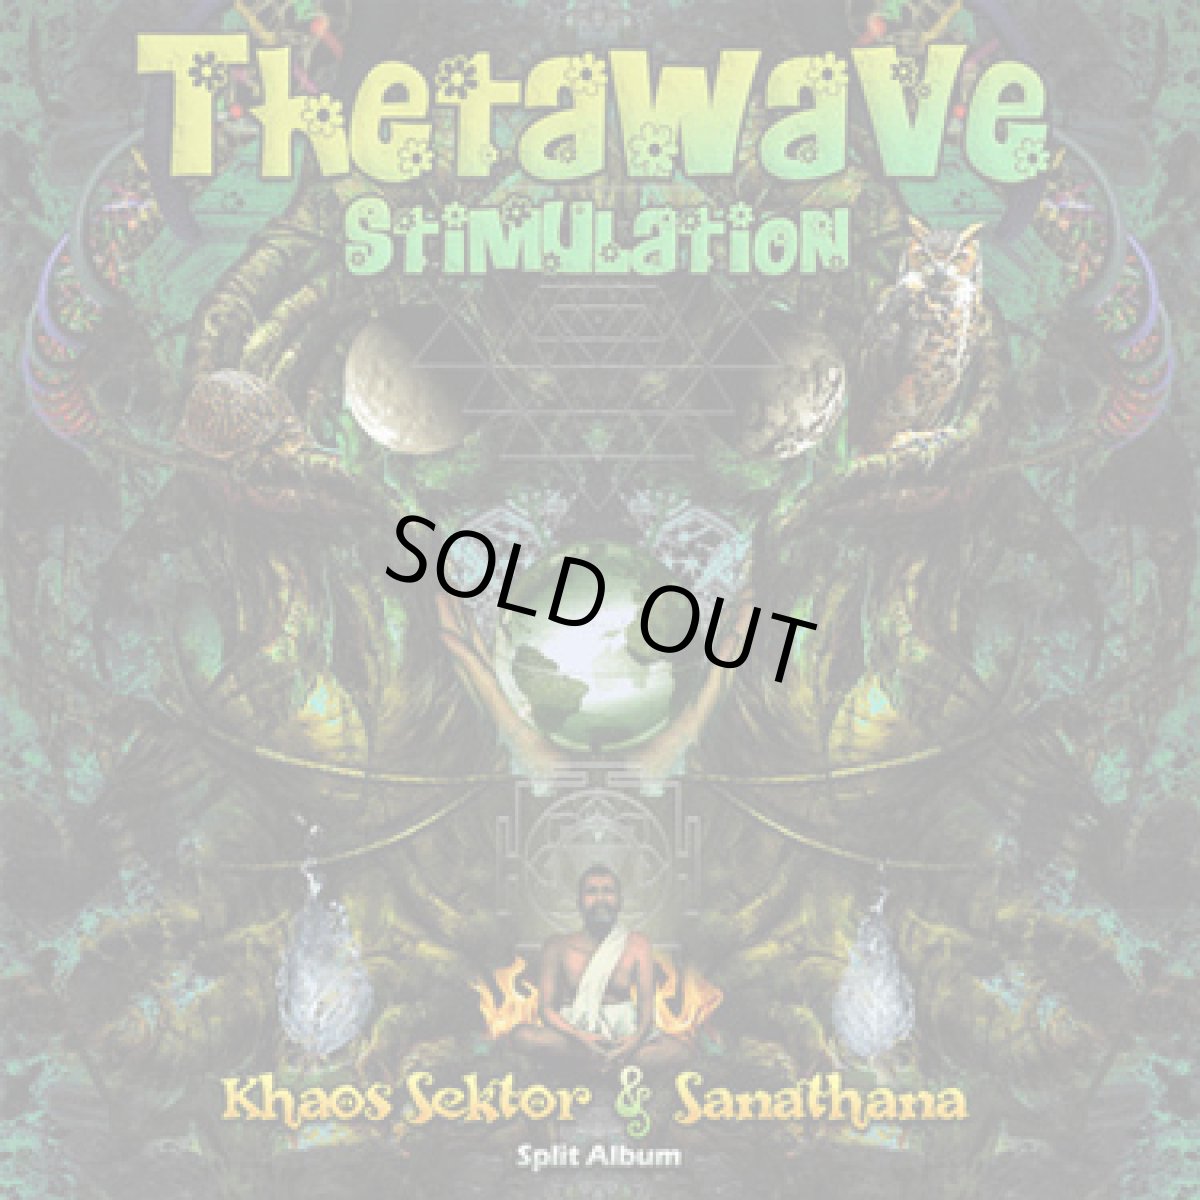 画像1: CD「Sanathana & Khaos Sektor / Thetawave Stimulation」【ダークサイケ】 (1)